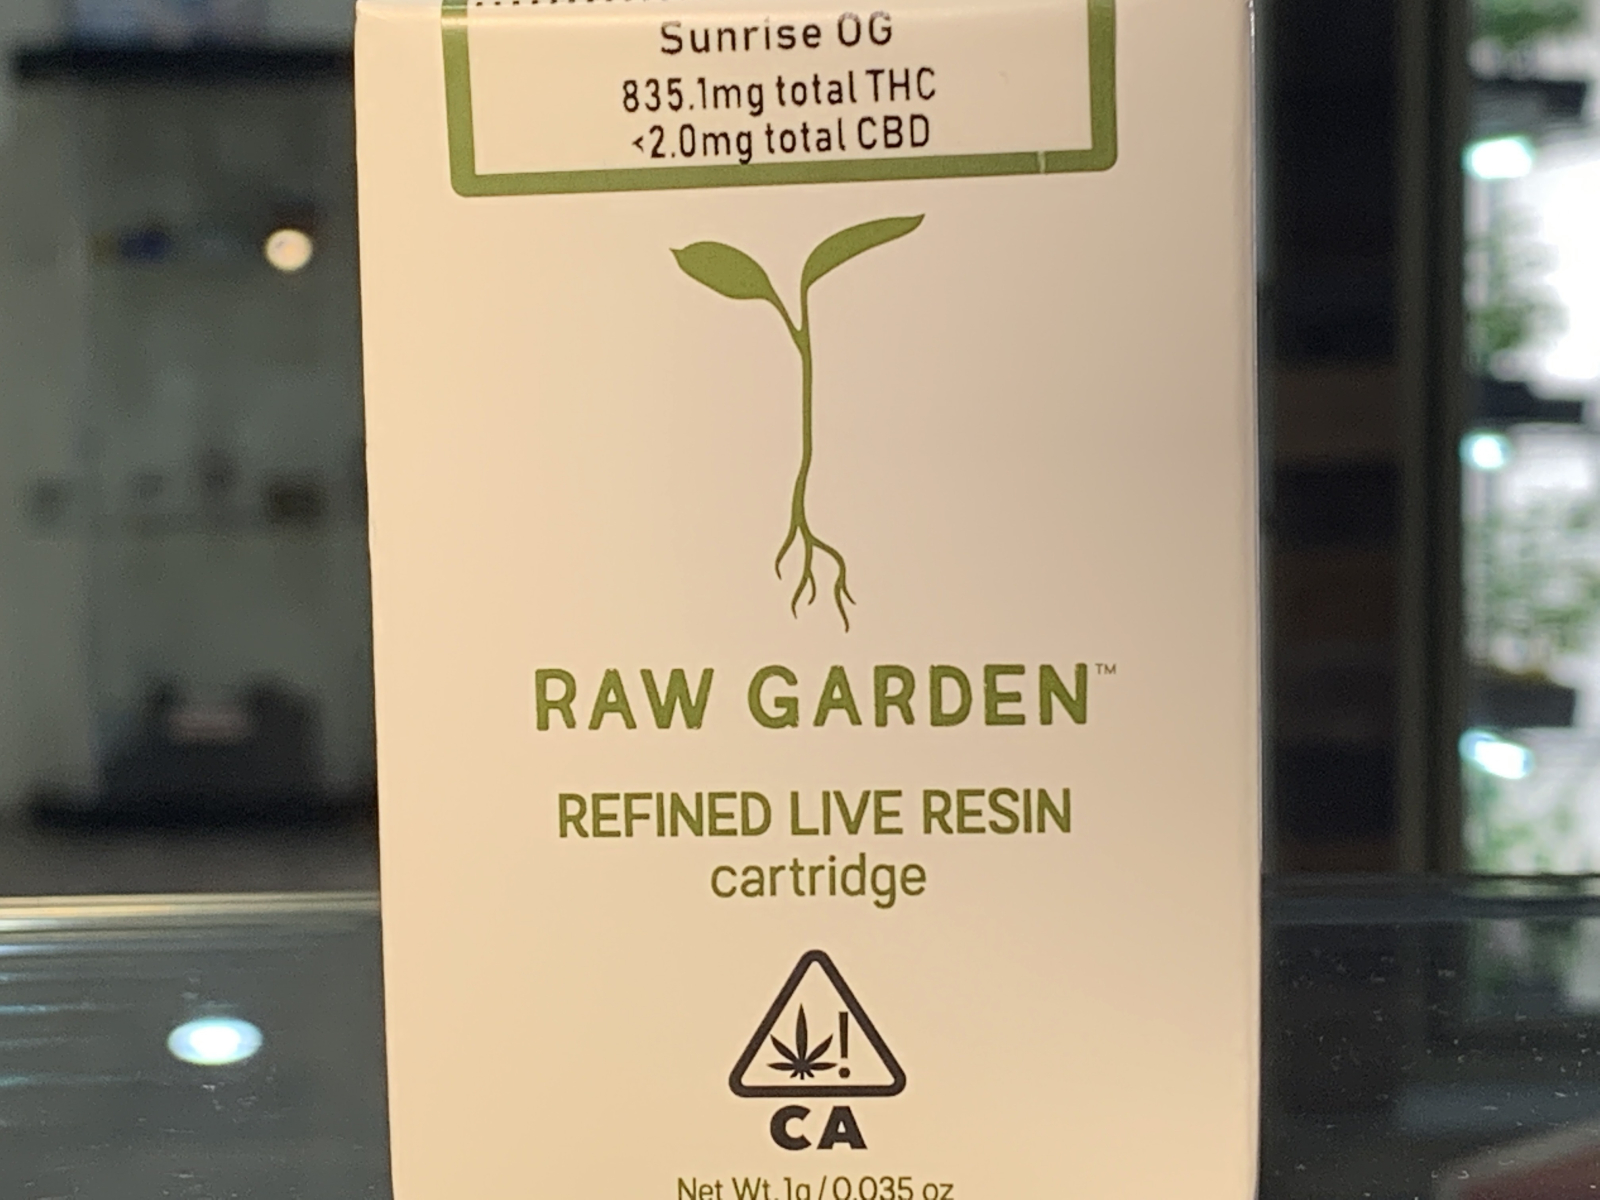 Raw Garden Sunrise OG full gram cartridge 